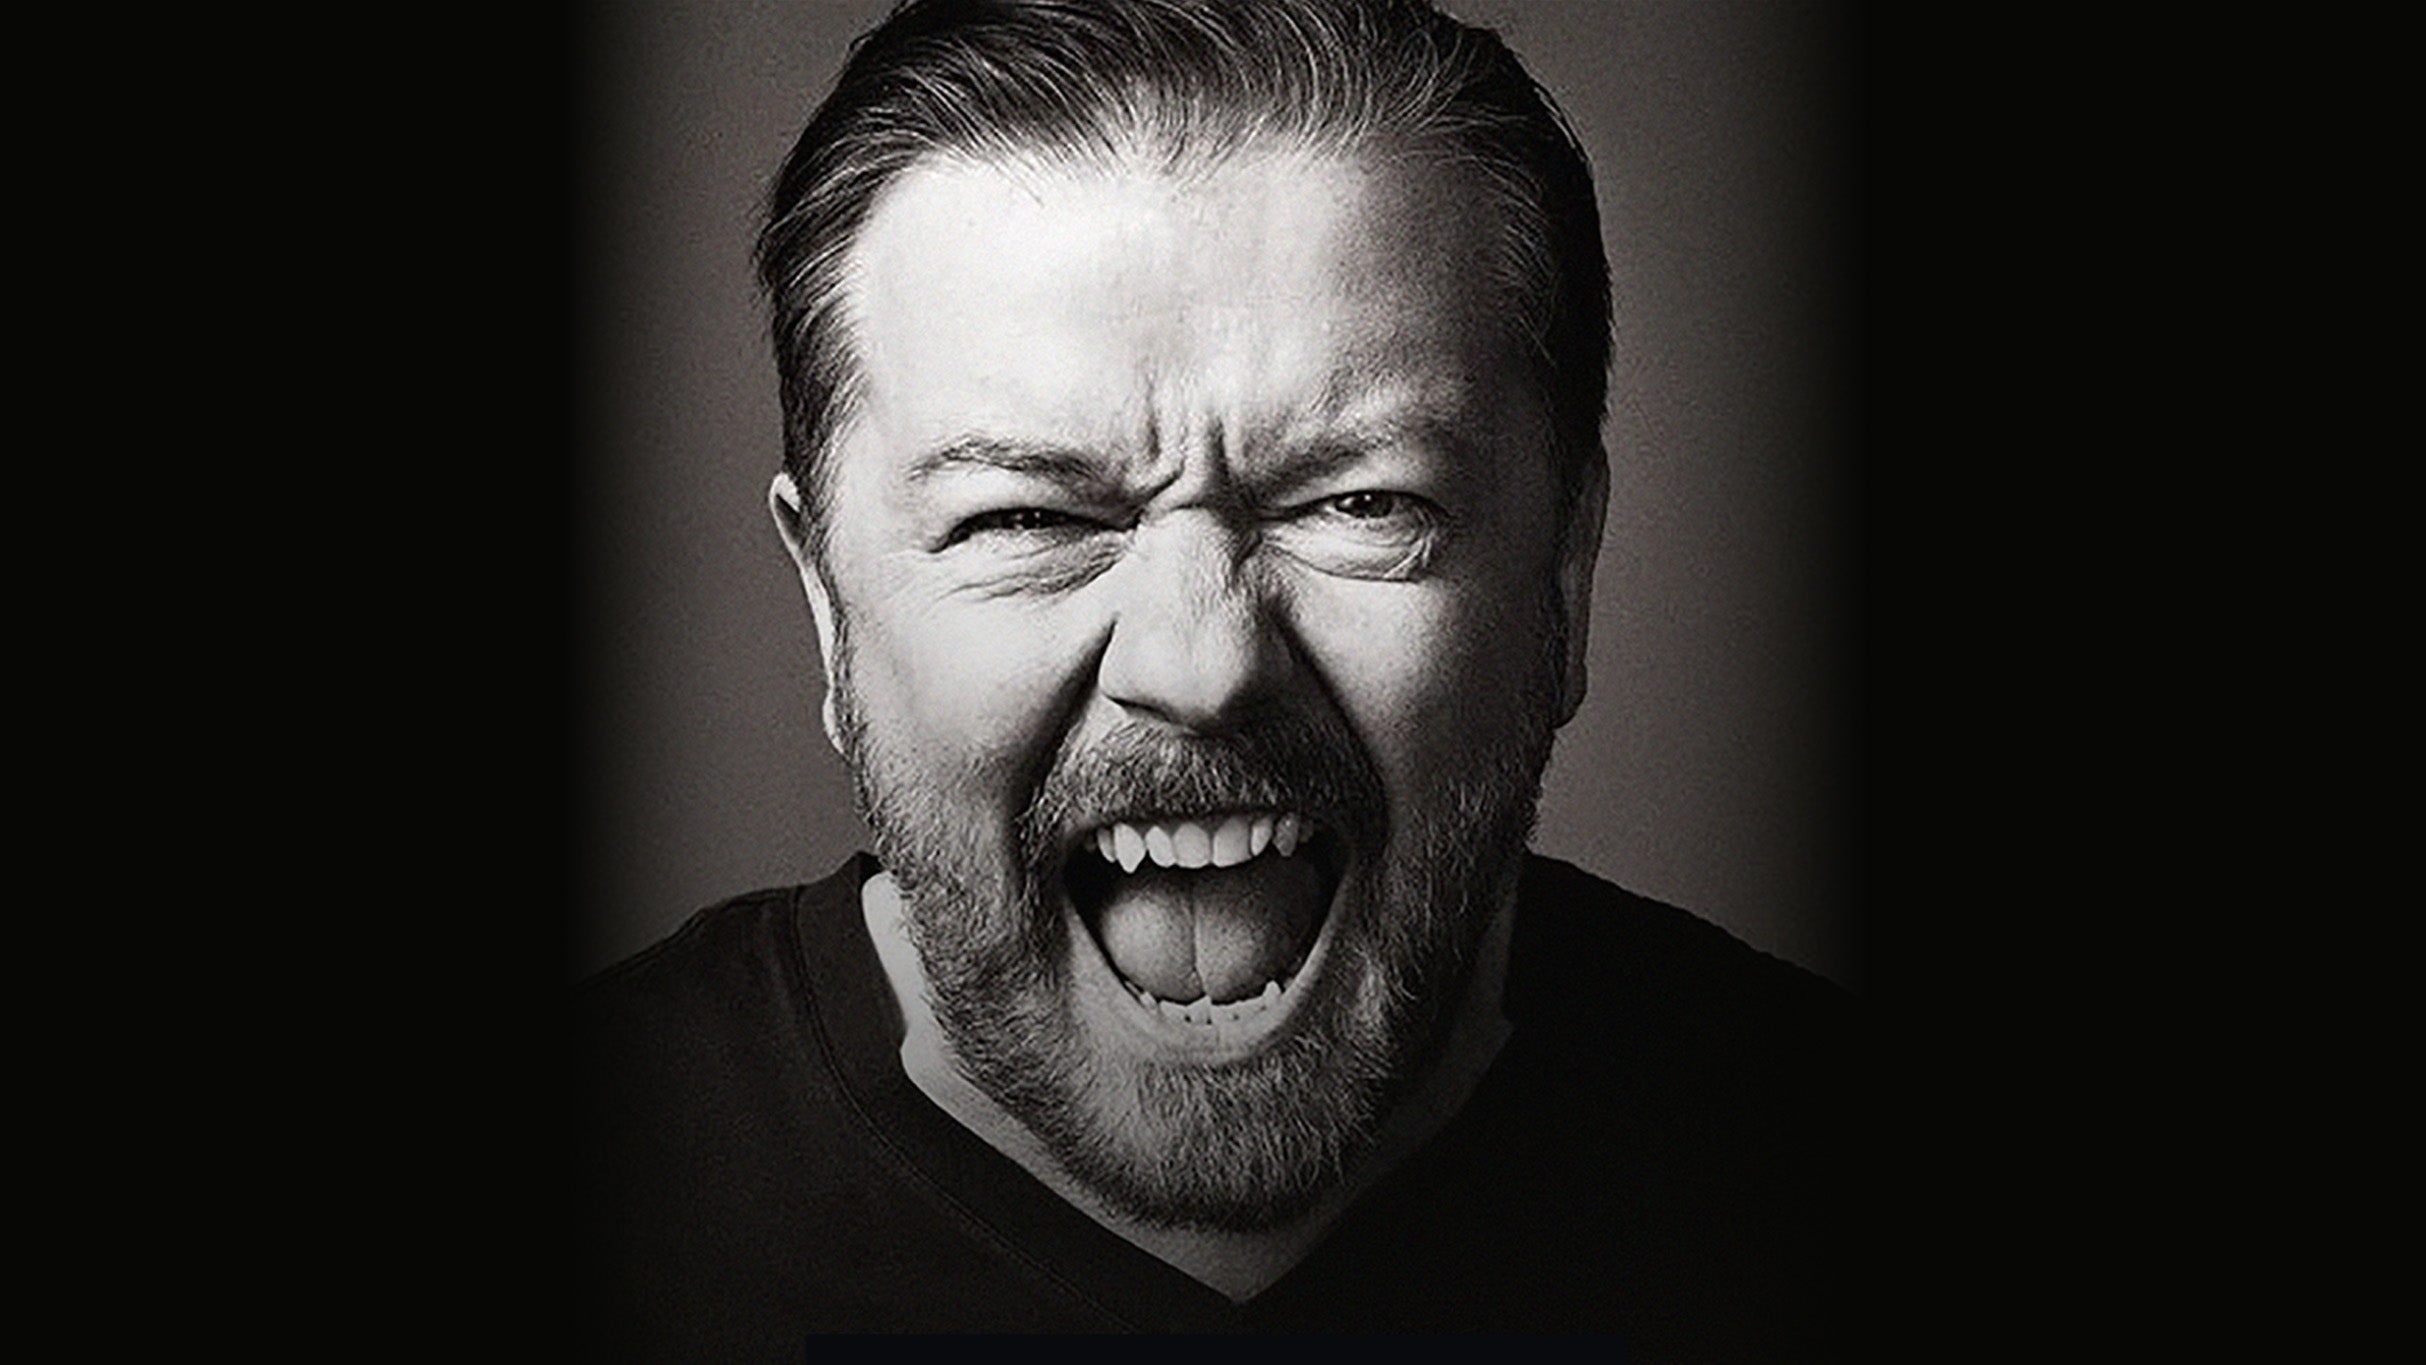 Ricky Gervais: Armageddon at Hollywood Bowl